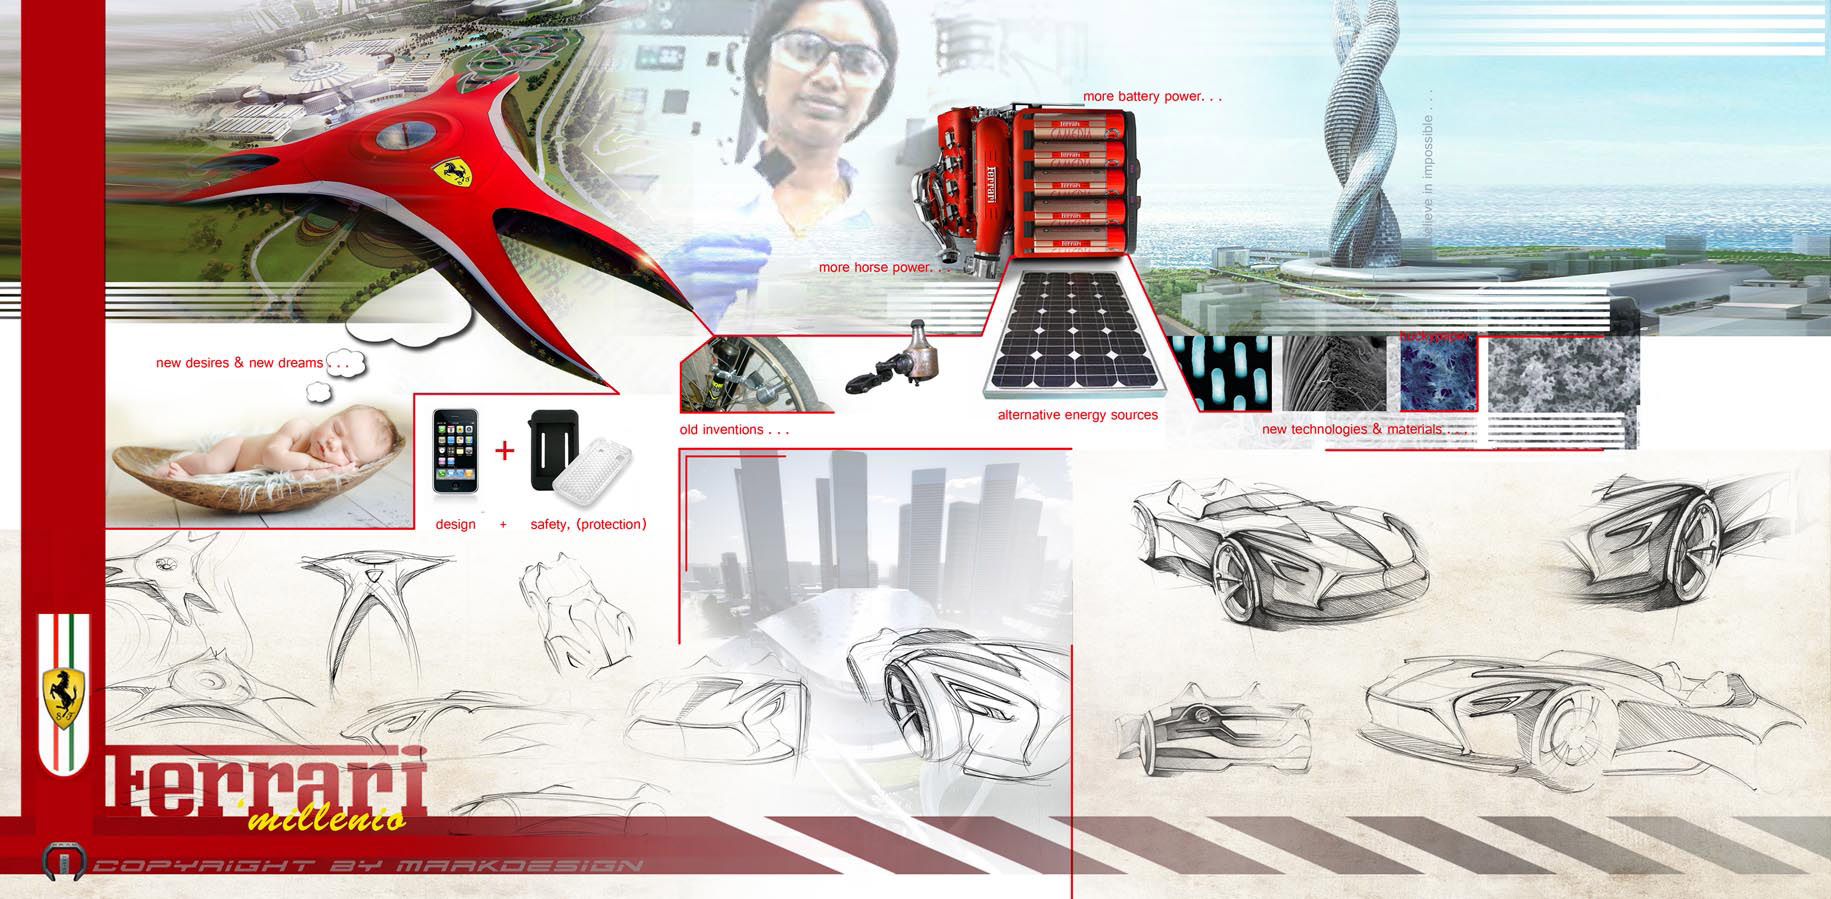 Ferrari Concept MarkDesign